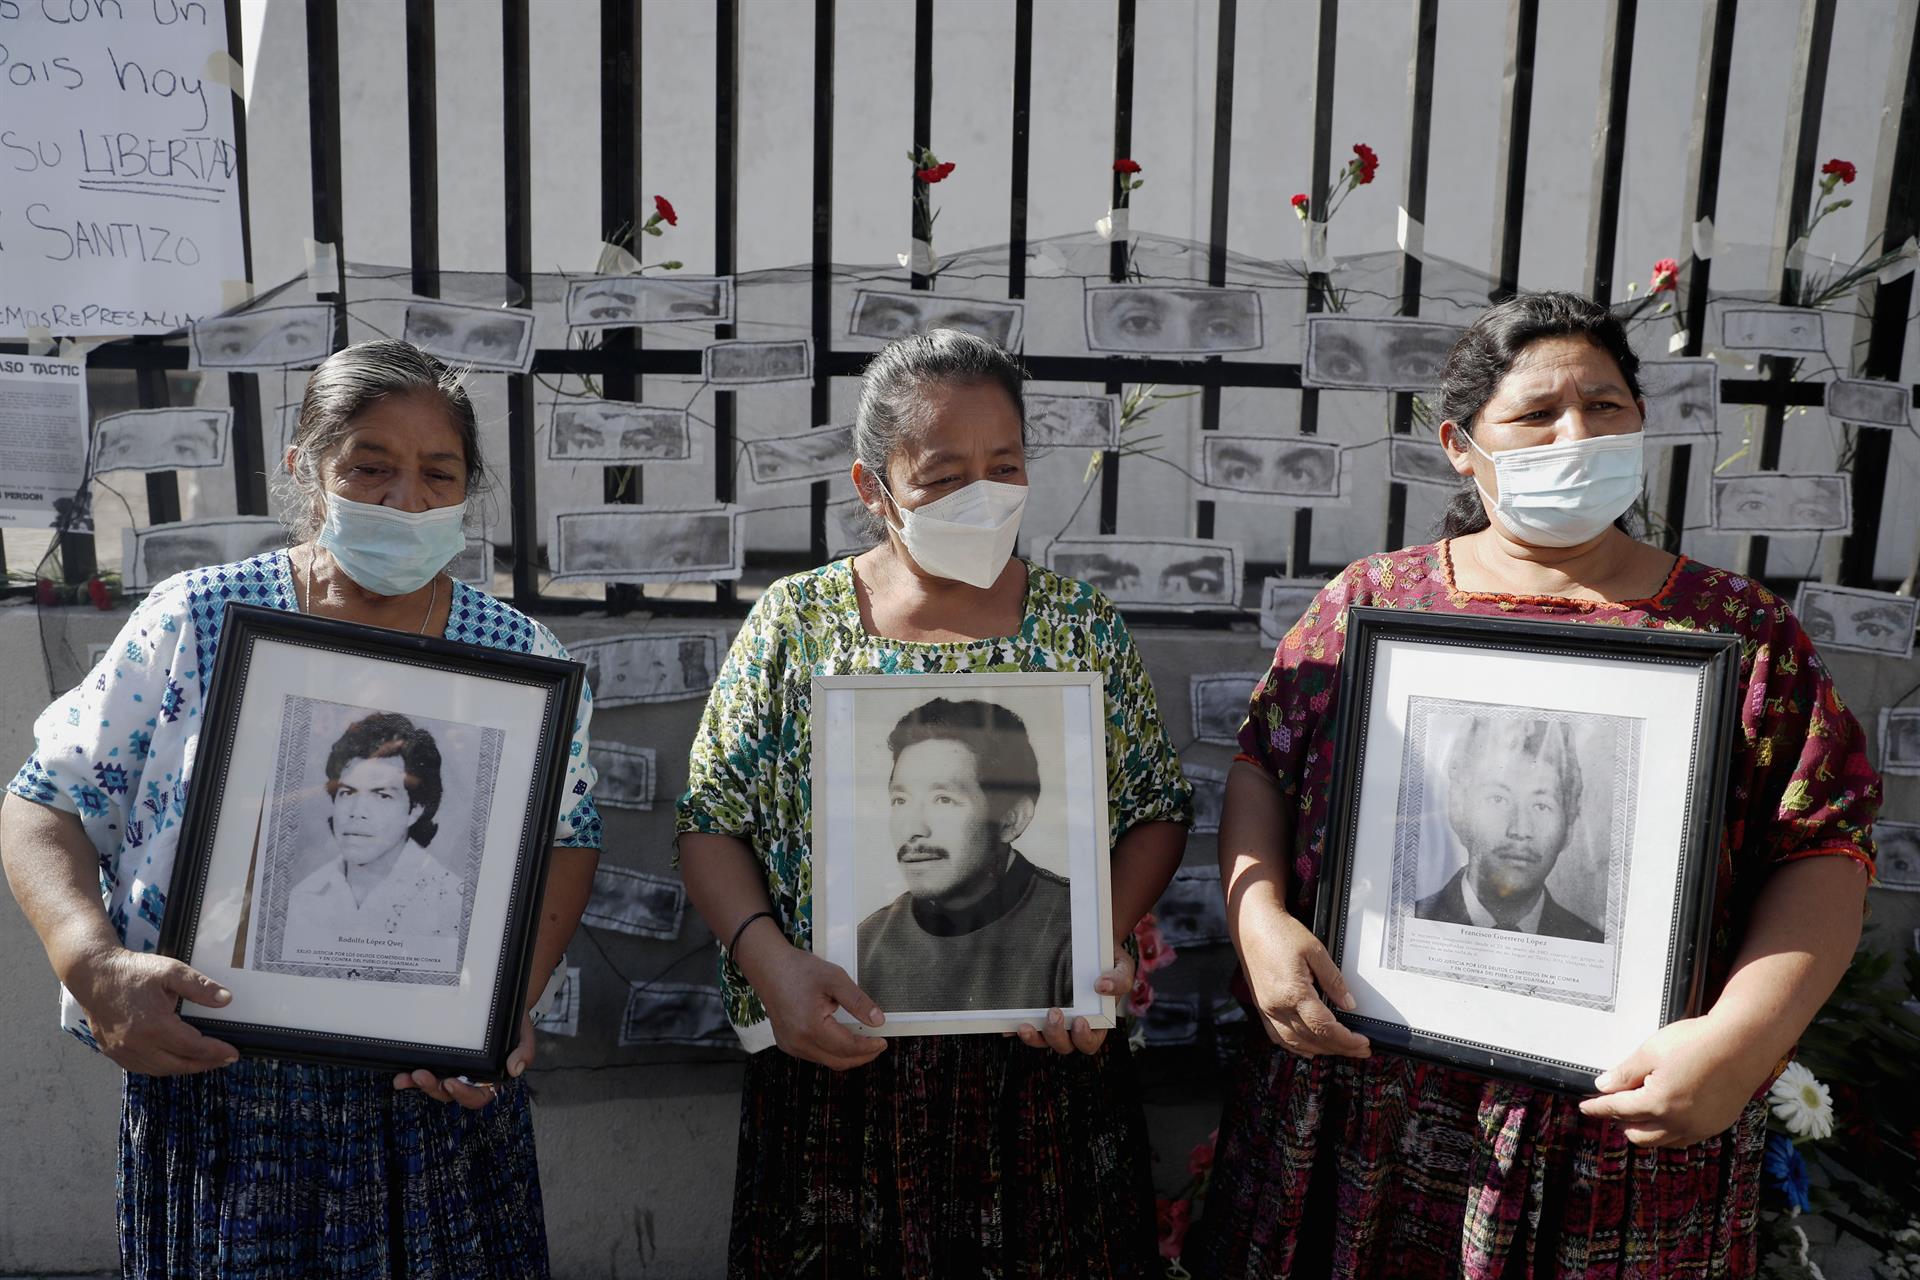  La justicia llega 39 años después para tres líderes sociales en Guatemala